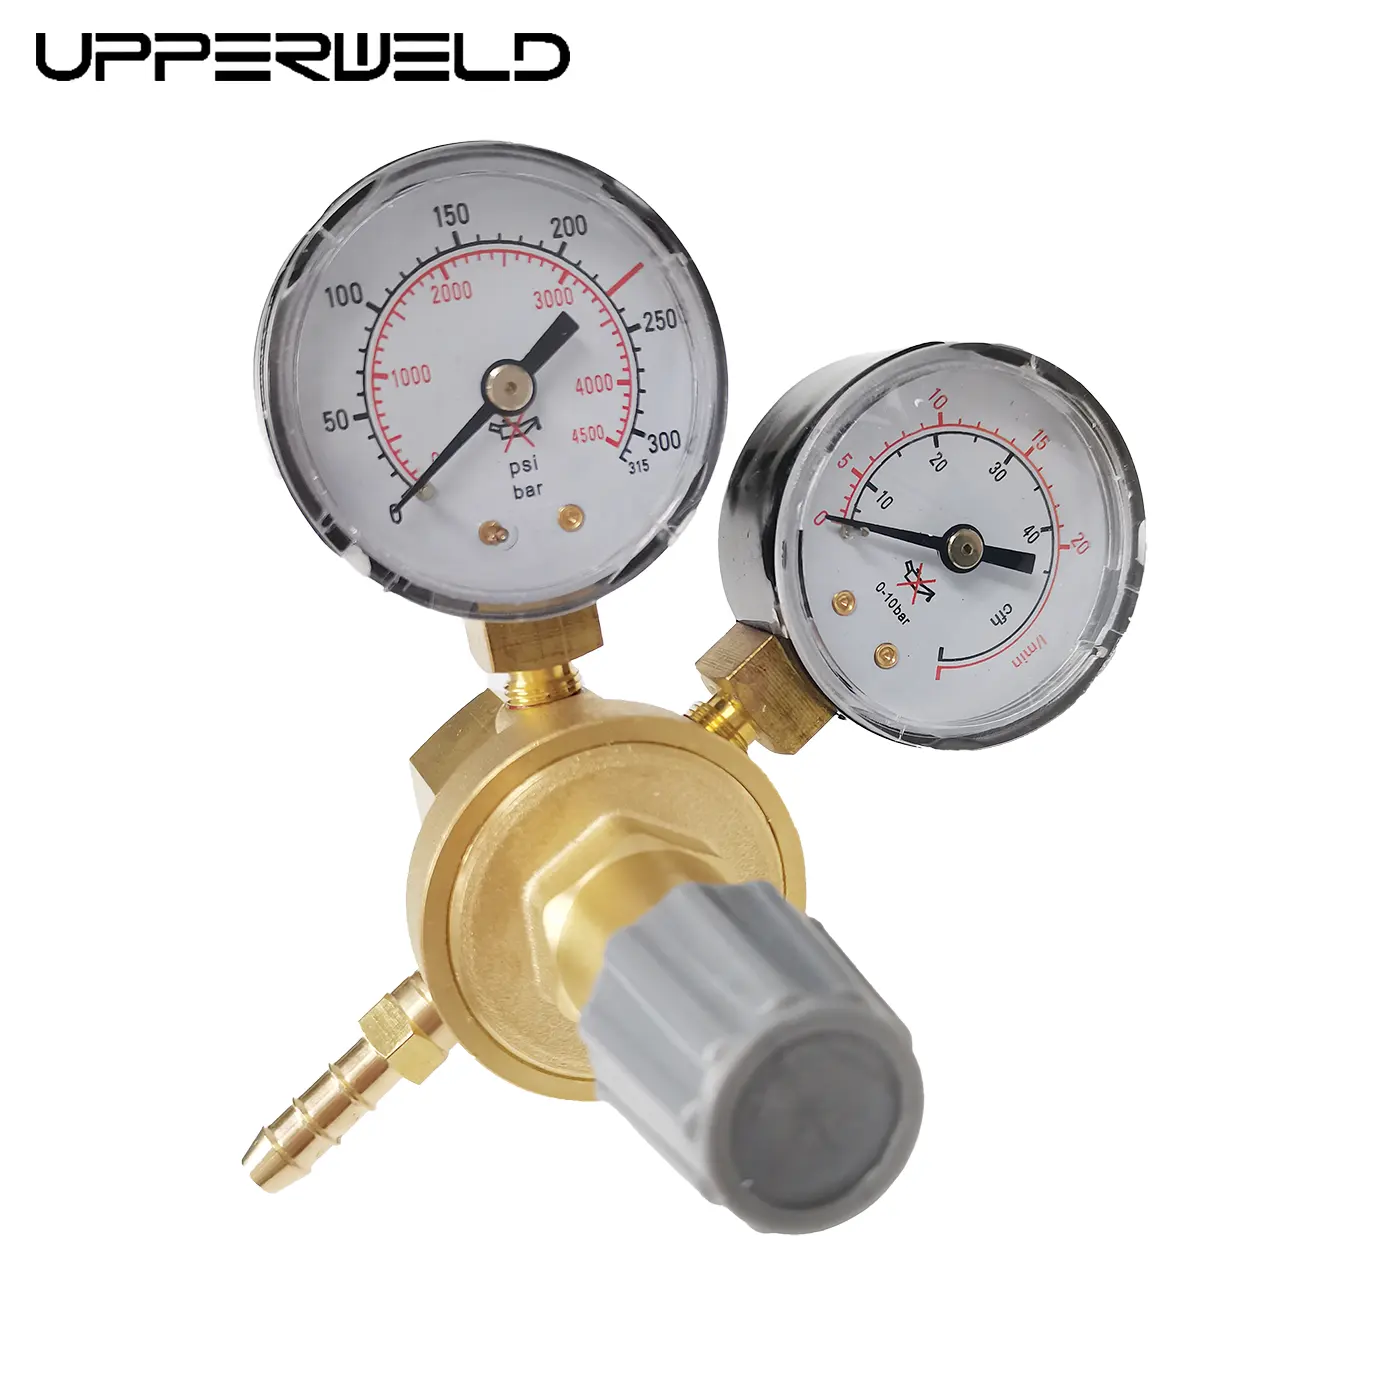 UPPERWELD Régulateur d'oxygène haute basse pression à double étage Régulateur de soudage TIG MIG Réducteur de pression de gaz